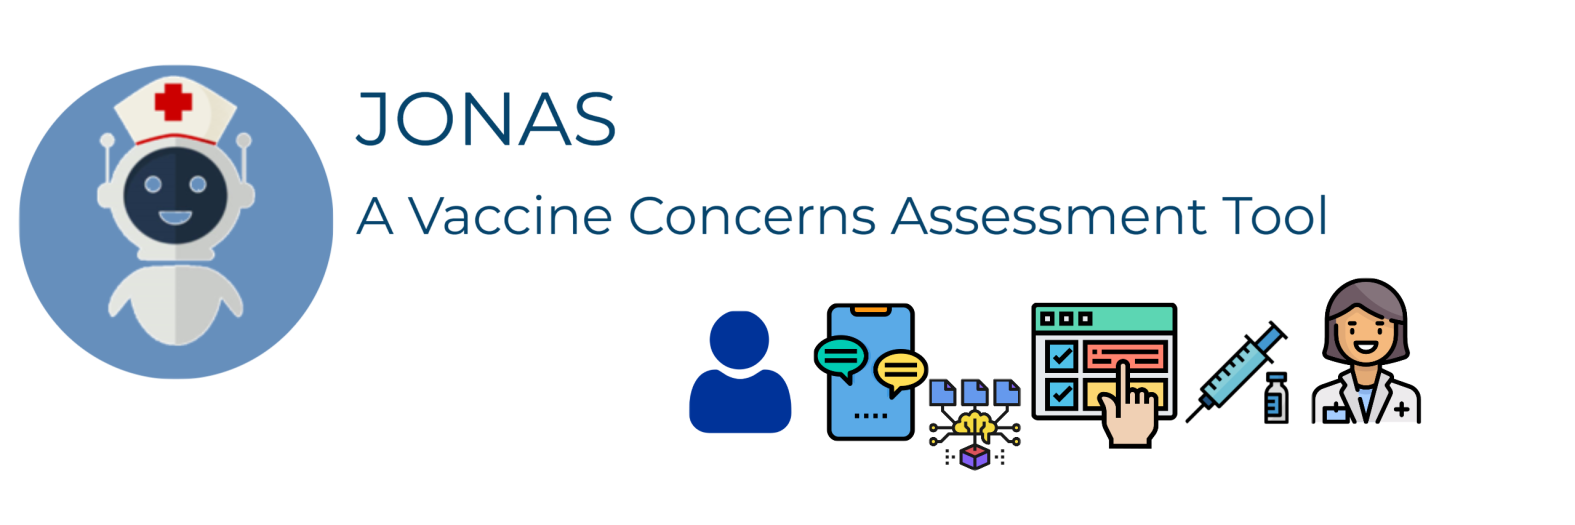 JONAS: A Vaccine Concerns Assessment Tool